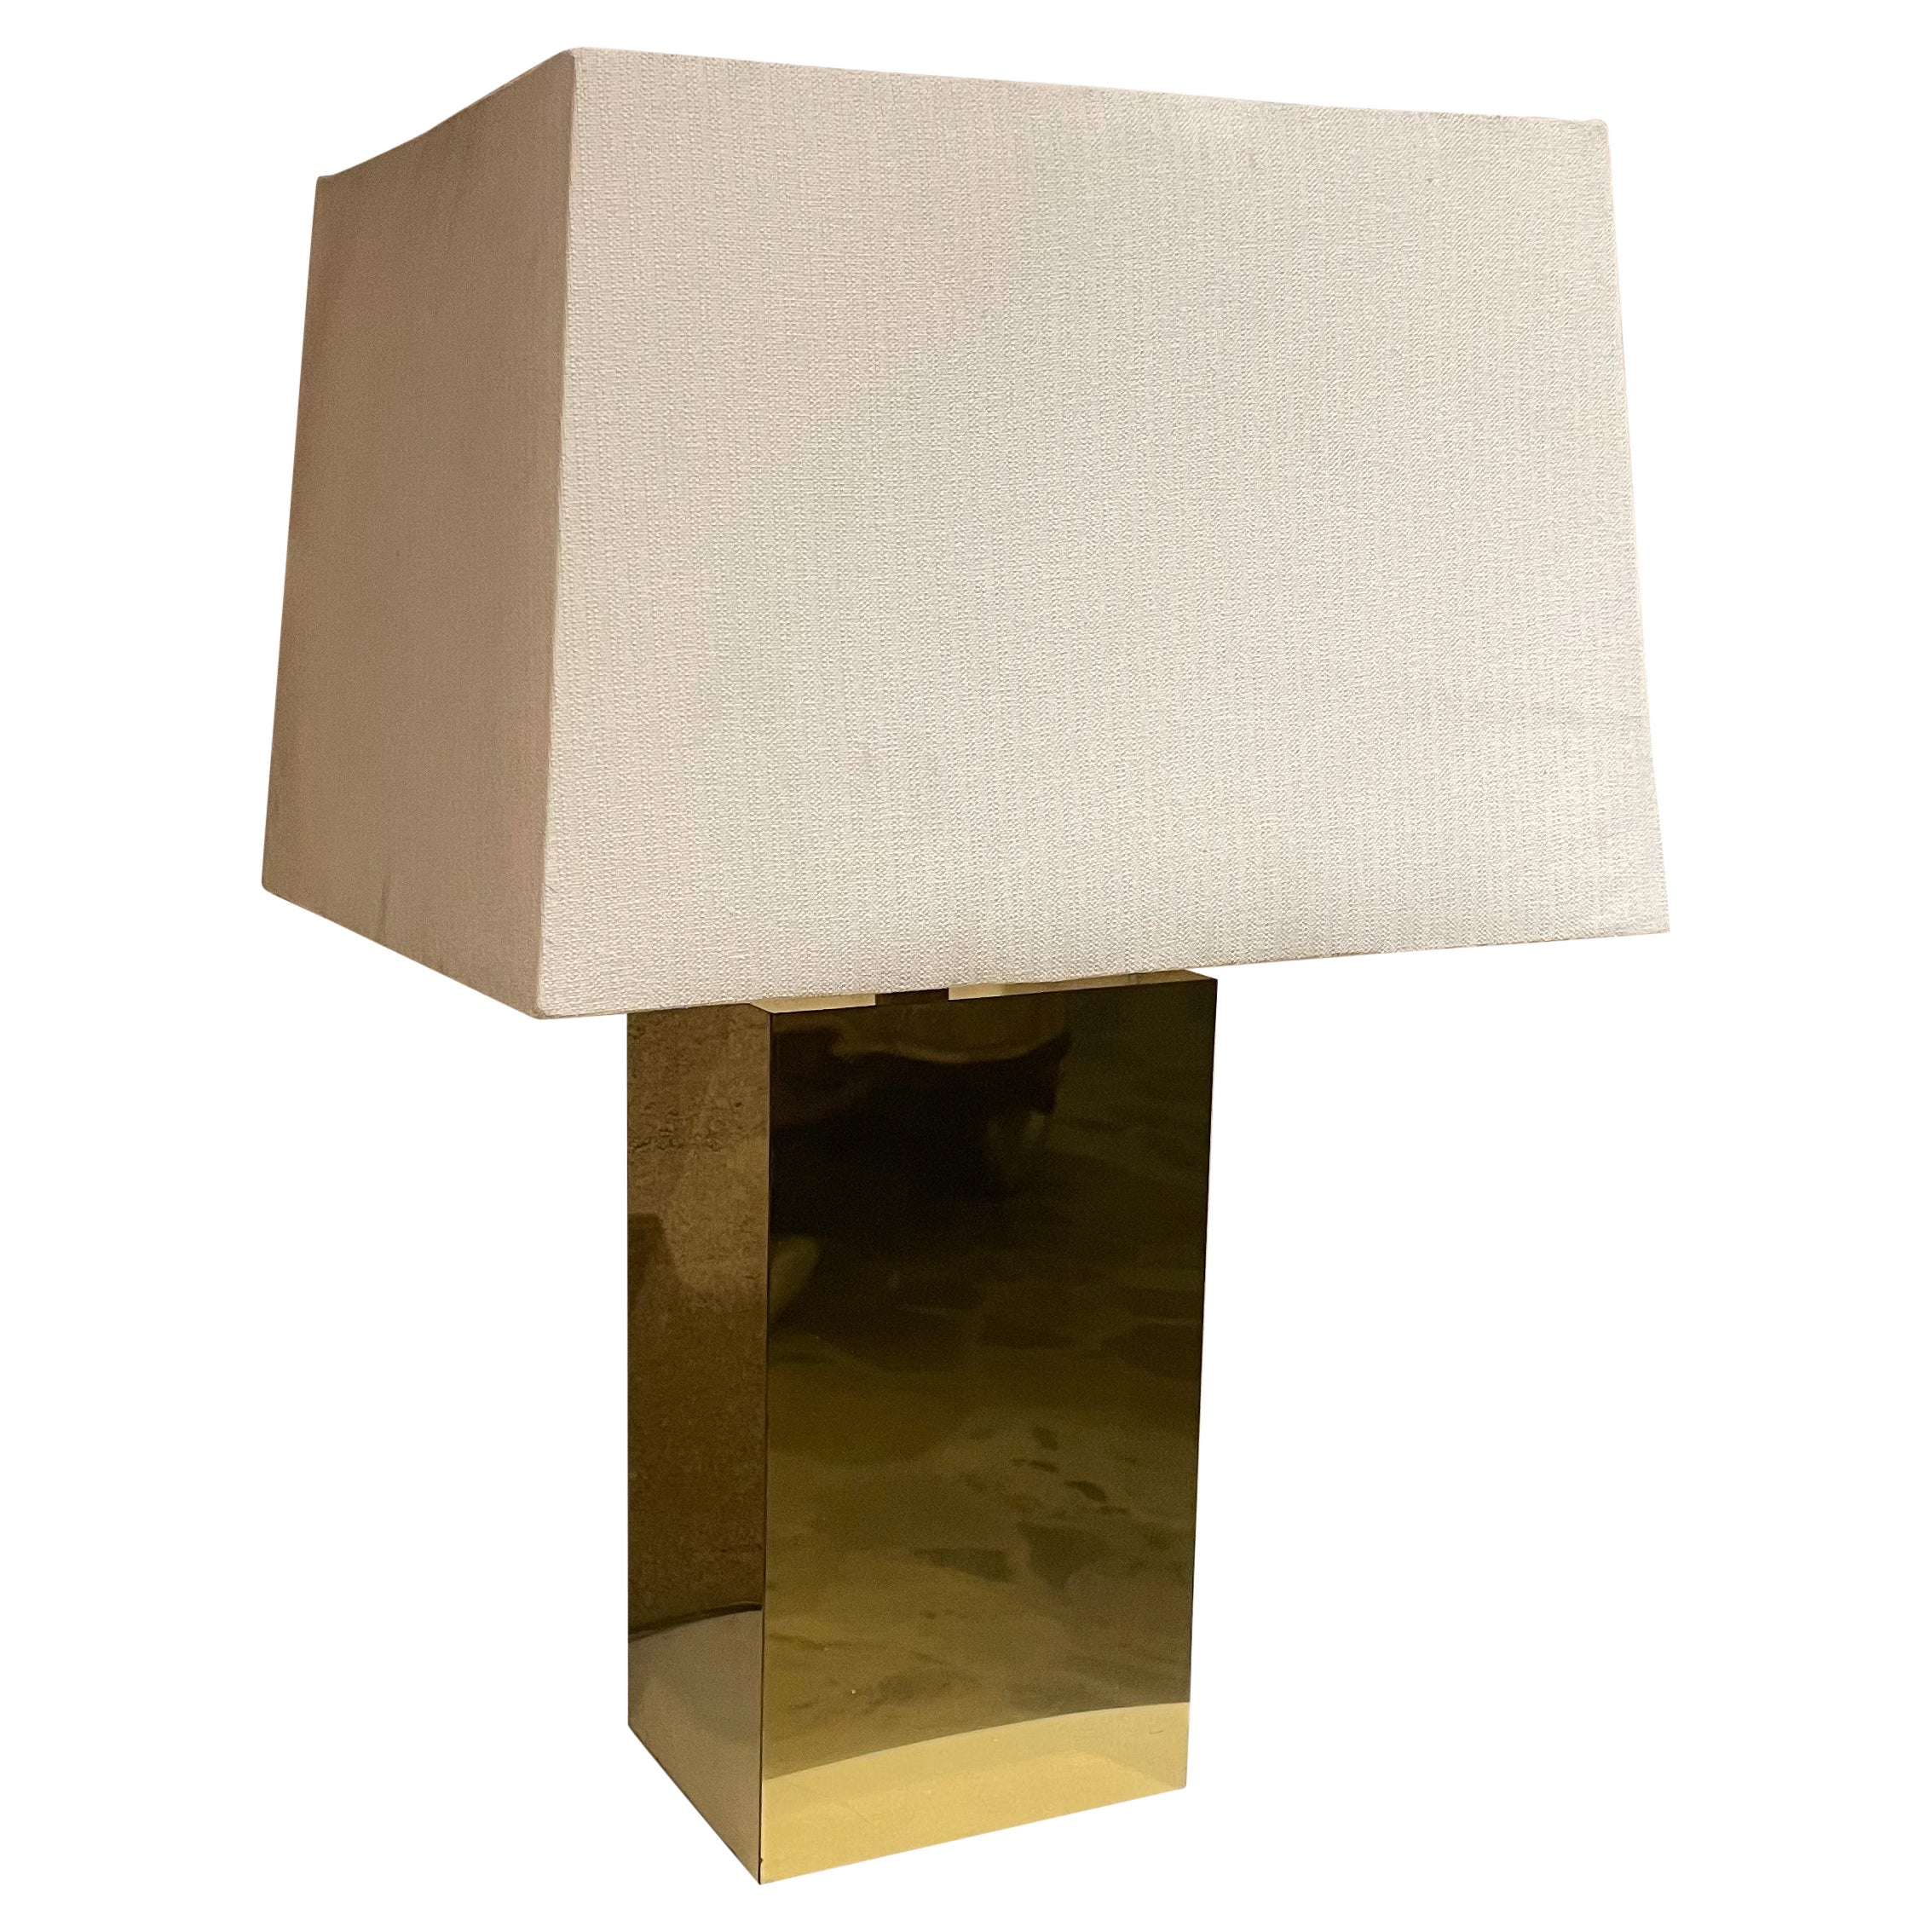 1980s Post Modern Brass Sculptural Table Lamp